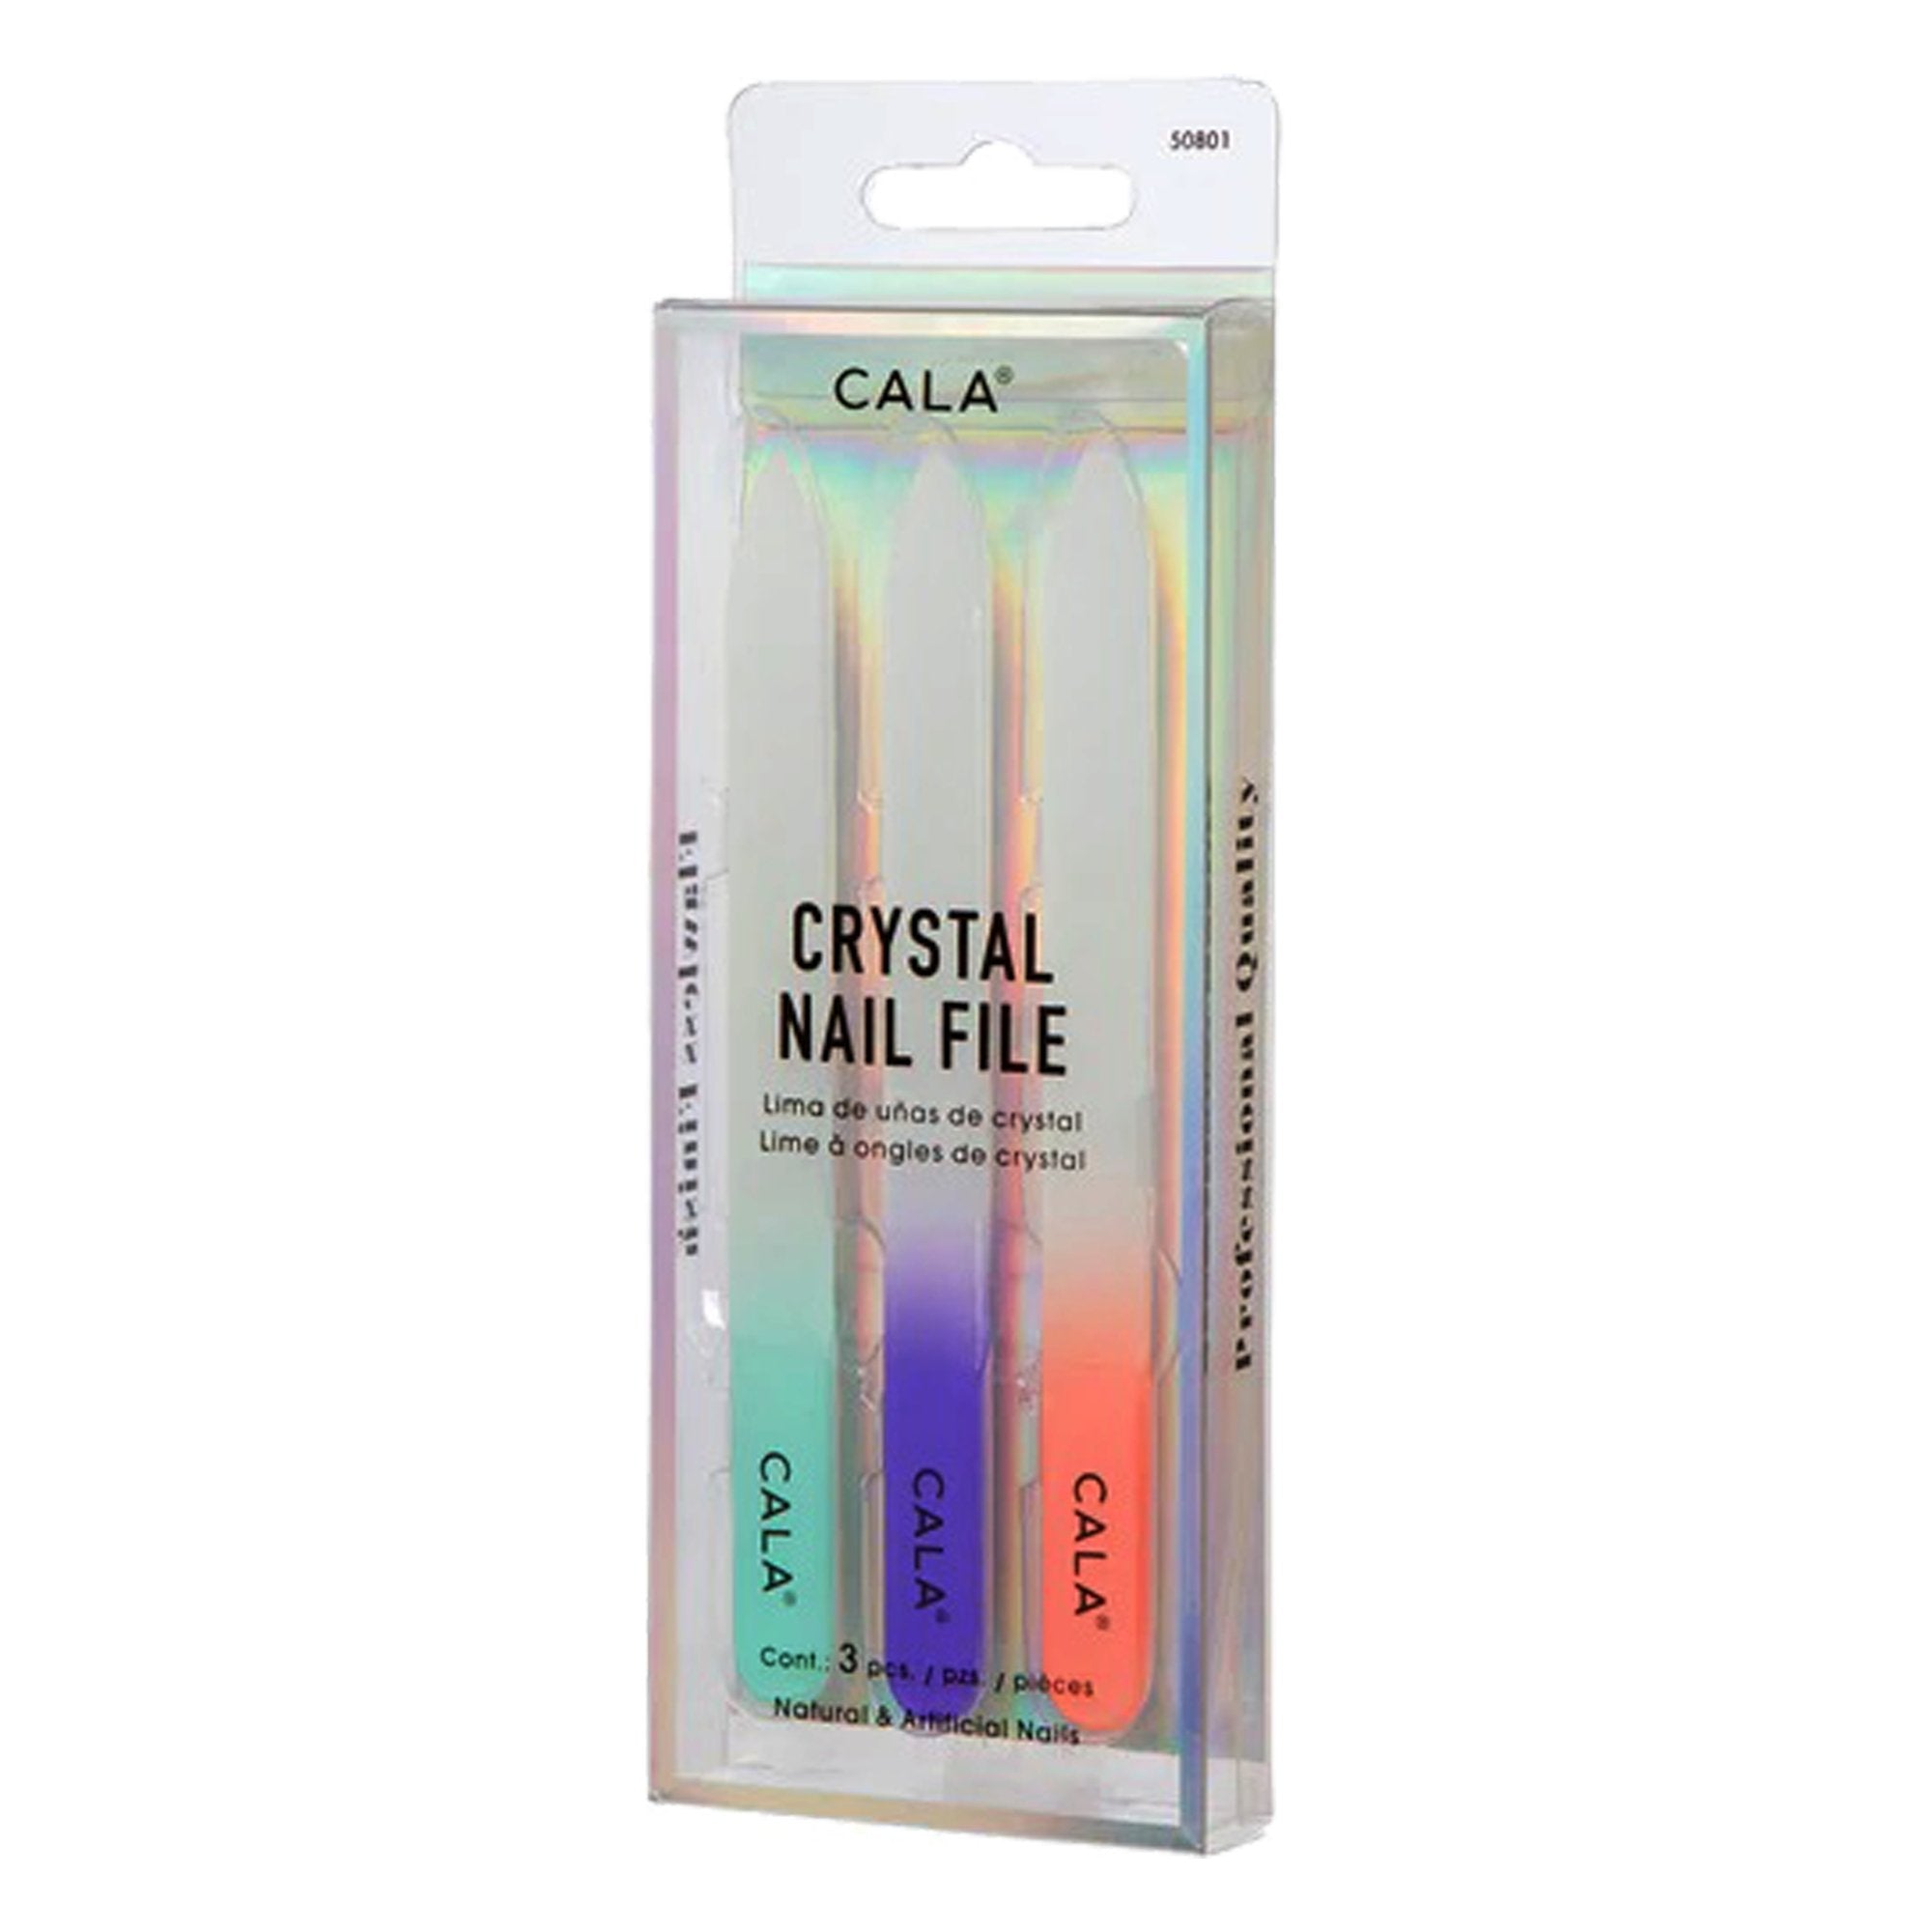 Cala Crystal Nail File (3Pcs / Pk) 50801 - IZZAT DAOUK SA